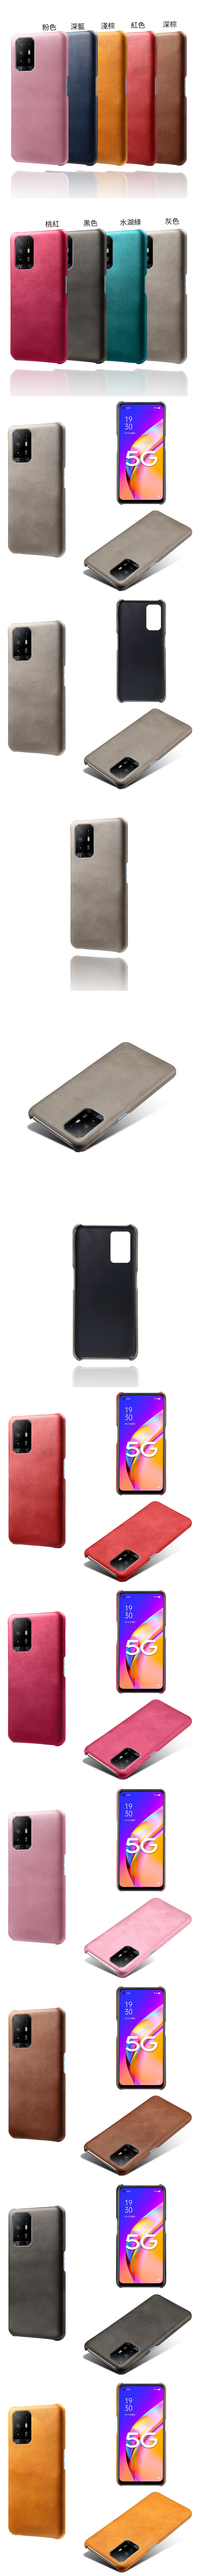 OPPO Reno 5Z 5G 皮革保護殼(PLAIN) - 牛皮仿真皮紋單色背蓋素色多色手機殼保護套手機套